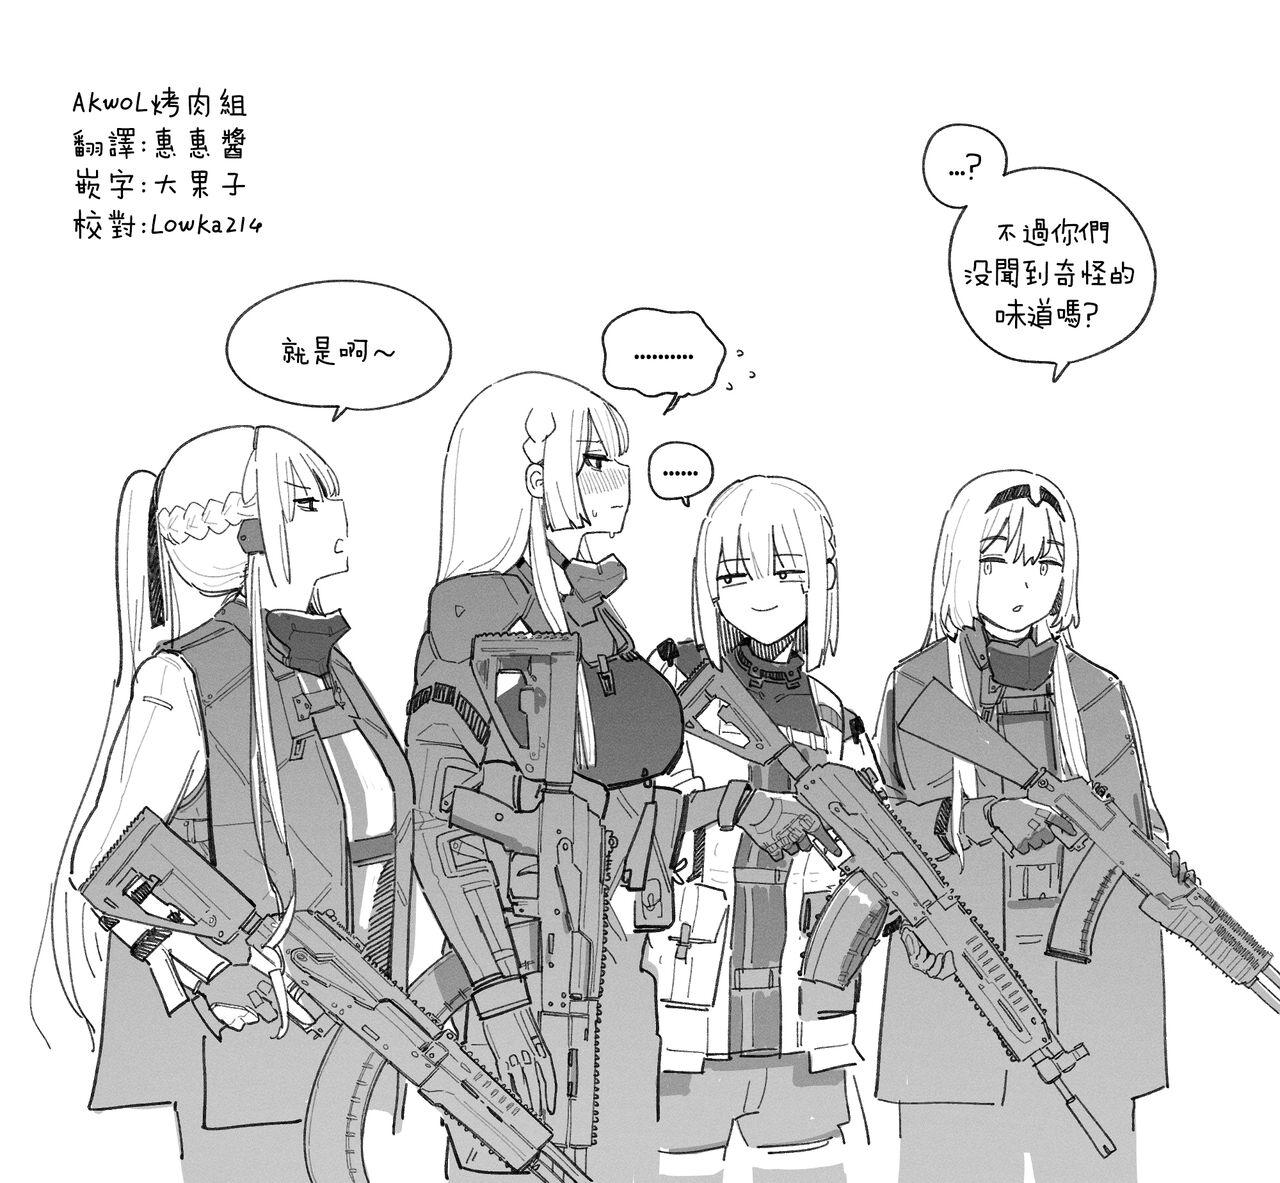 AK-15's abs 4